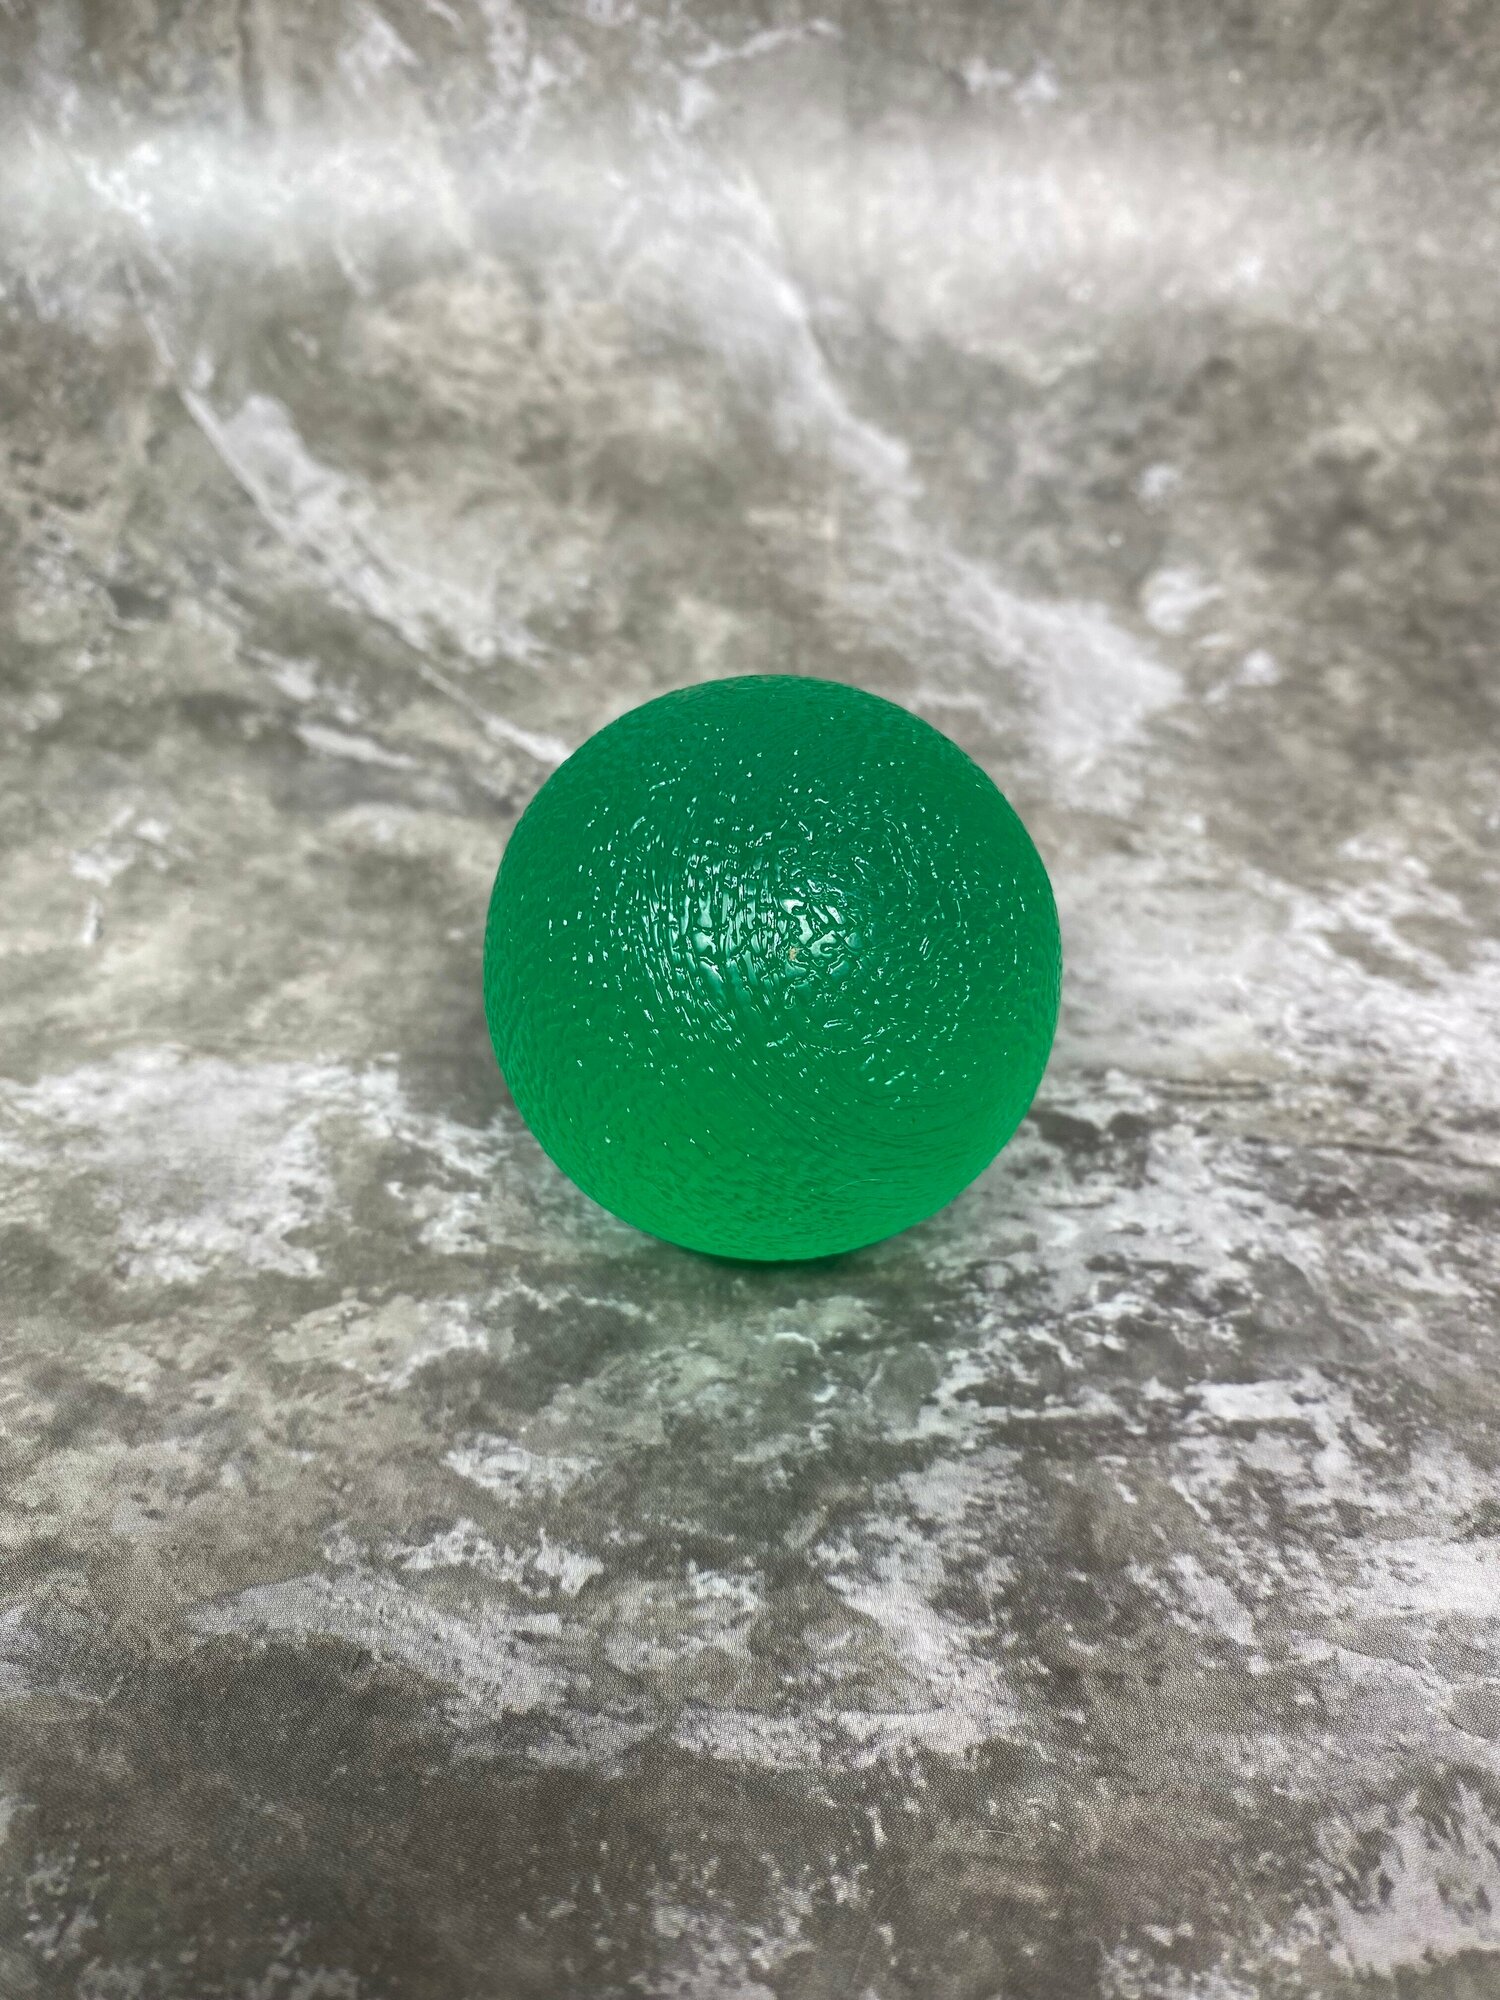 Кистевой эспандер полужесткий диаметр 5 см зеленый мяч для тренировки кисти (шаровидной формы)Ортосила